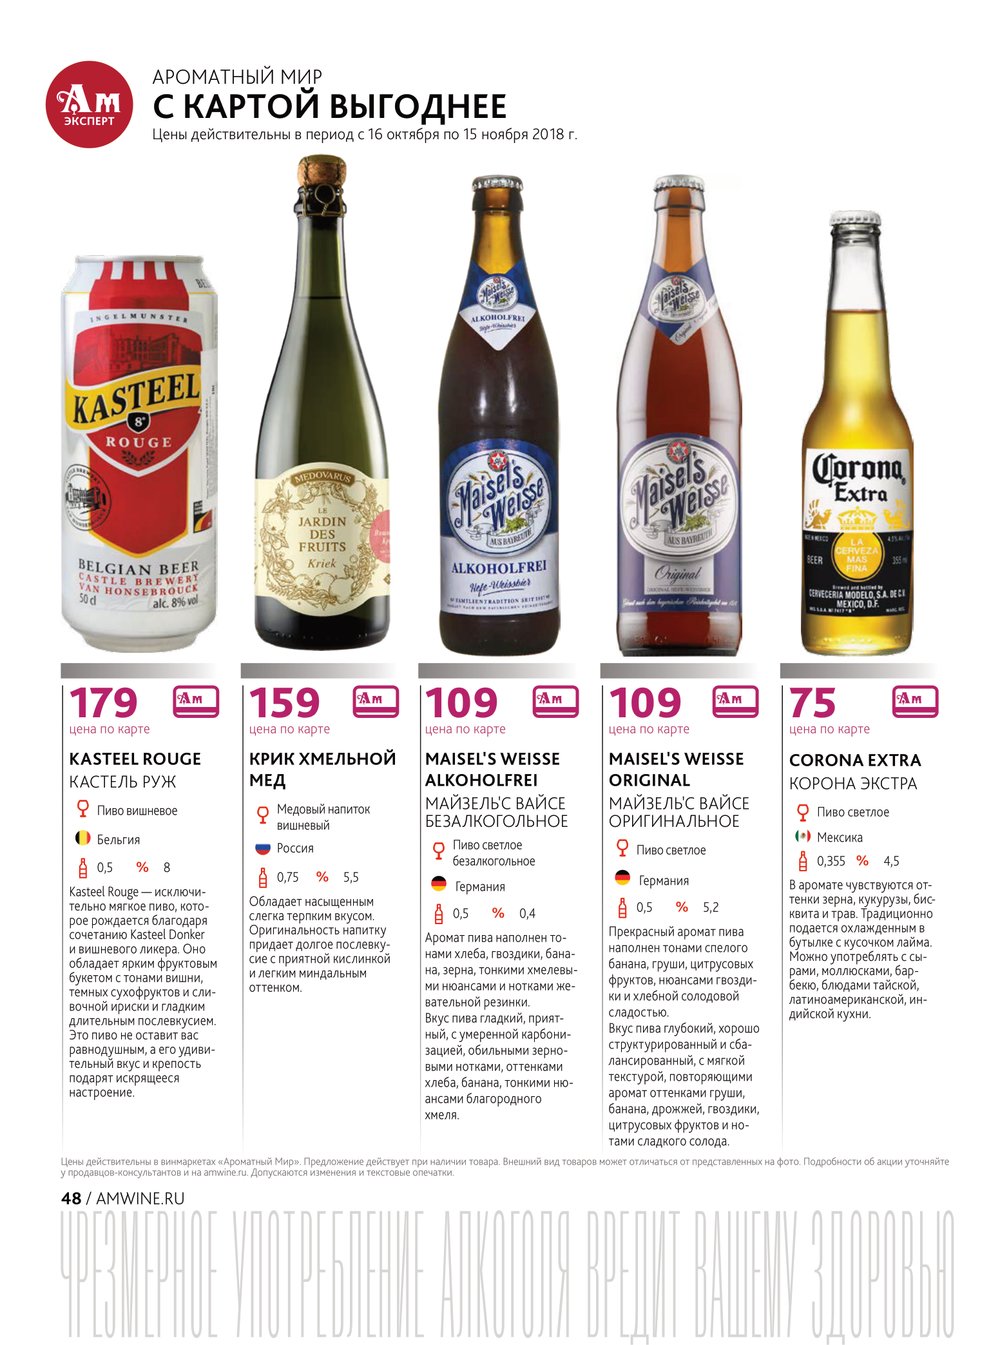 Пивной каталог. Немецкое пиво ароматный мир. Бельгийское пиво ароматный мир. Ароматный мир пиво каталог. Пиво ассортимент.